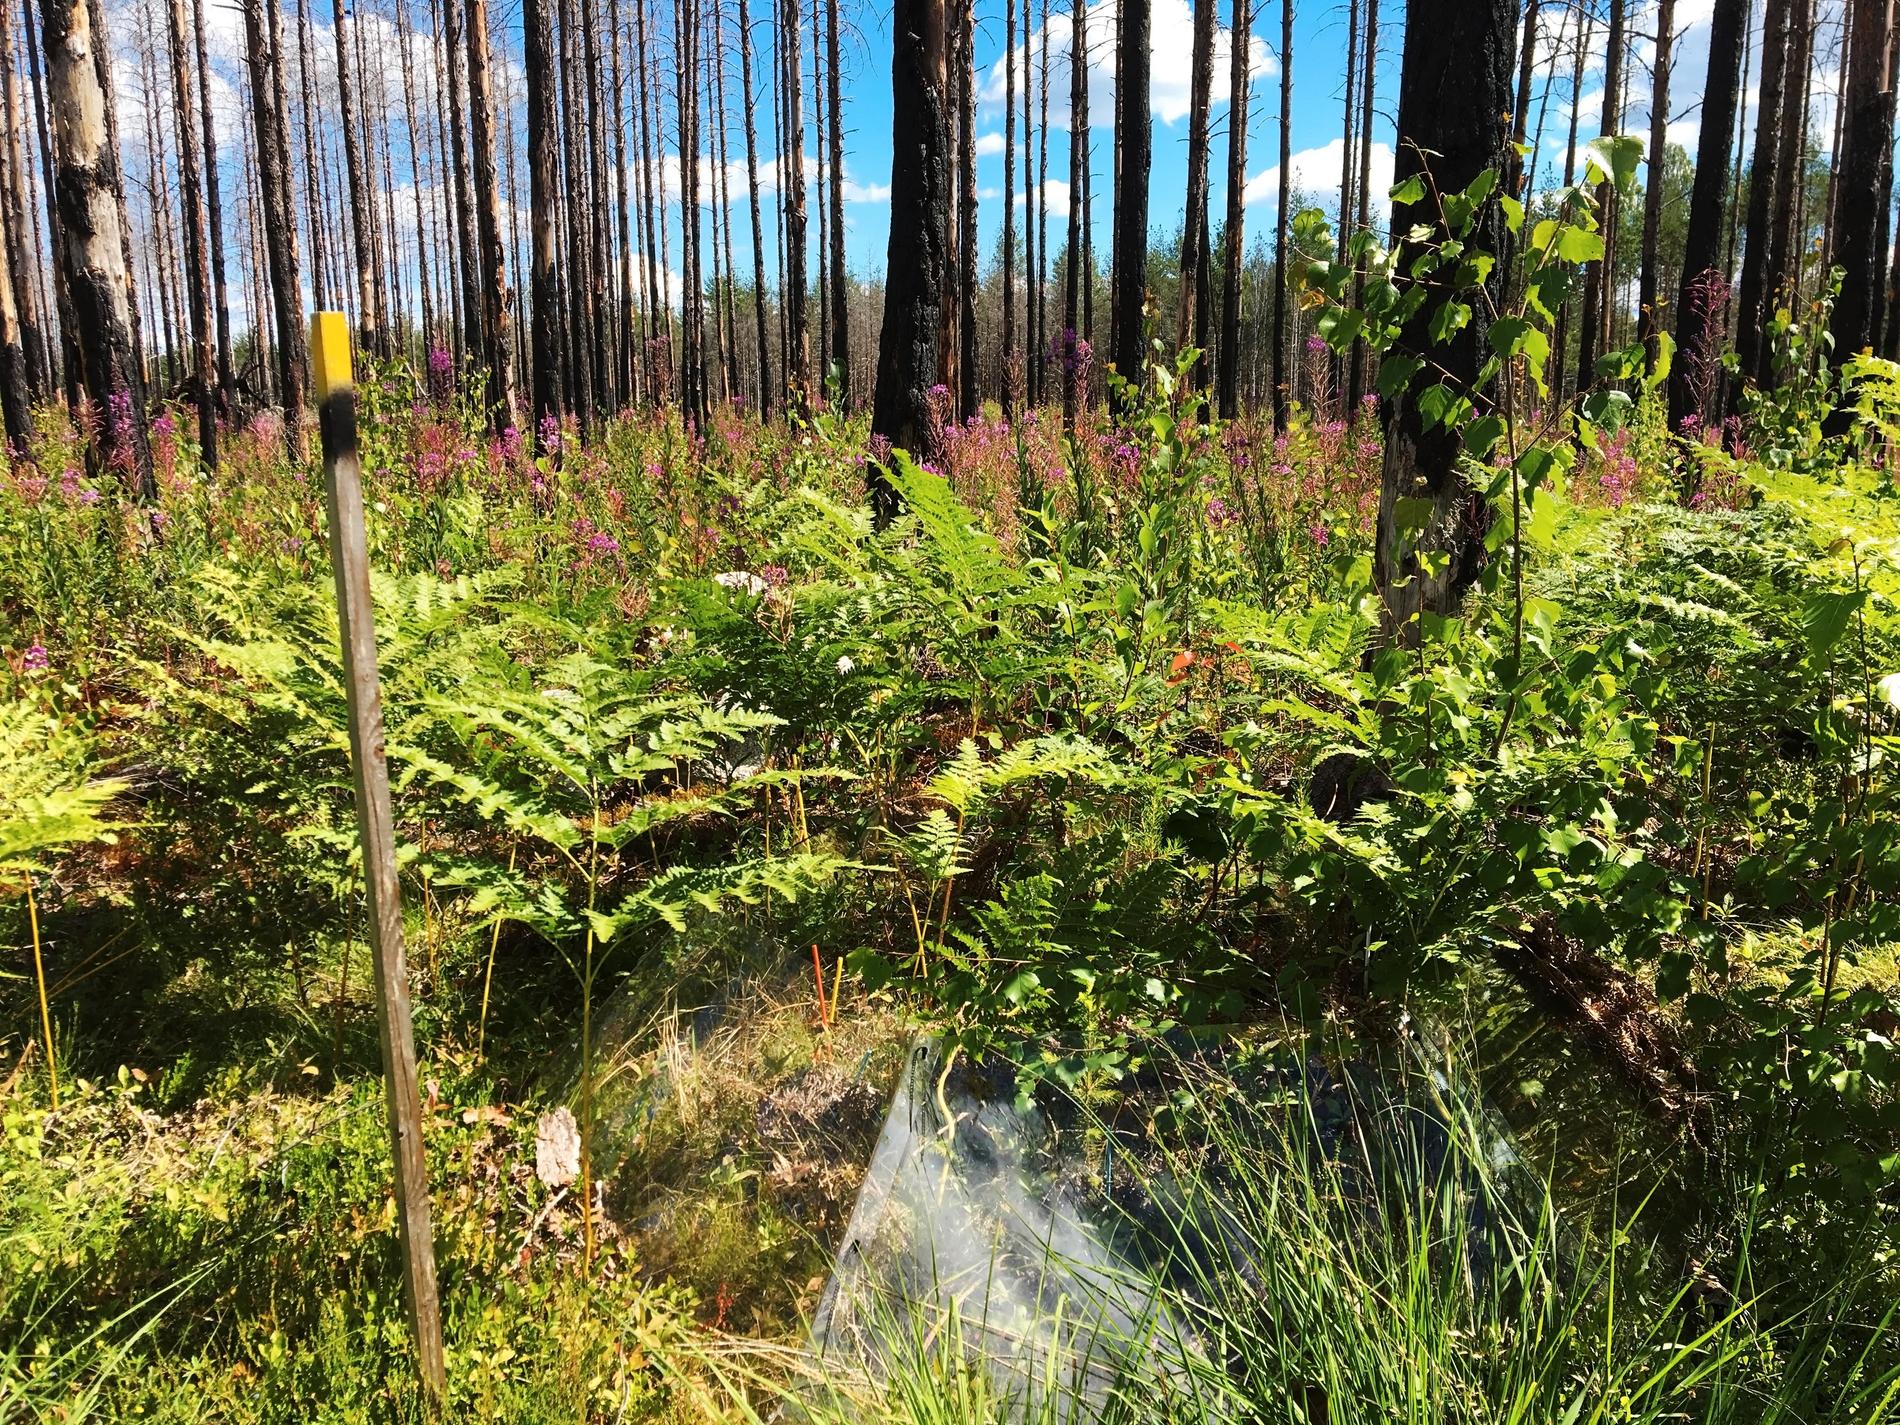 Fyra år efter den stora skogsbranden i Västmanland 2014 har naturen börjat återerövra det drabbade området. Växter som mjölkört, örnbräken, piprör och vårtbjörk har koloniserat den brända marken där många av de sönderbrända stammarna fortfarande står kvar.